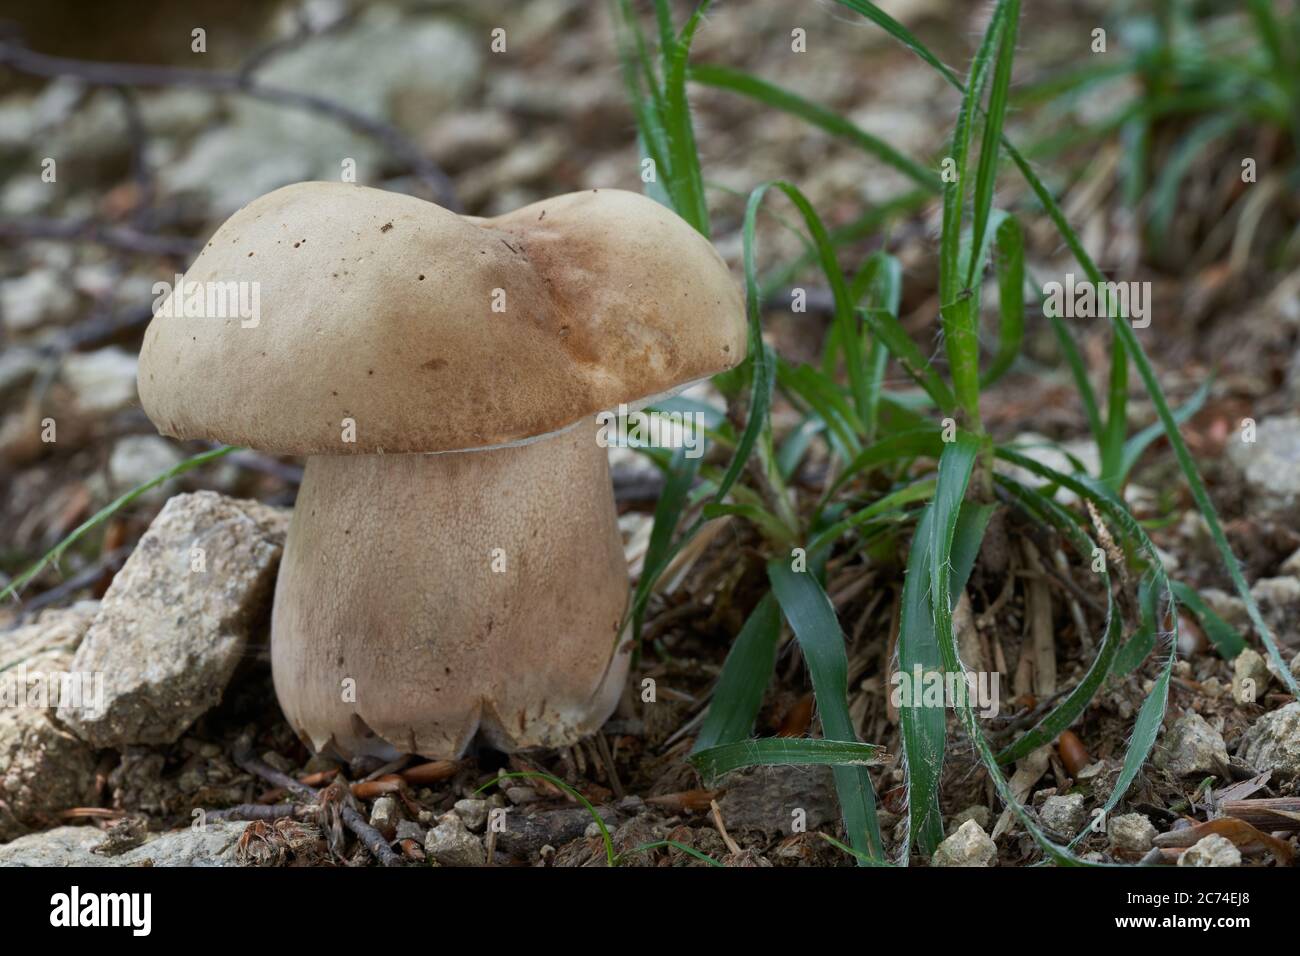 Essbarer Pilz Boletus reticulatus im Buchenwald. Bekannt als Sommer cep. Wilder Bolete-Pilz in steinerner Erde. Stockfoto